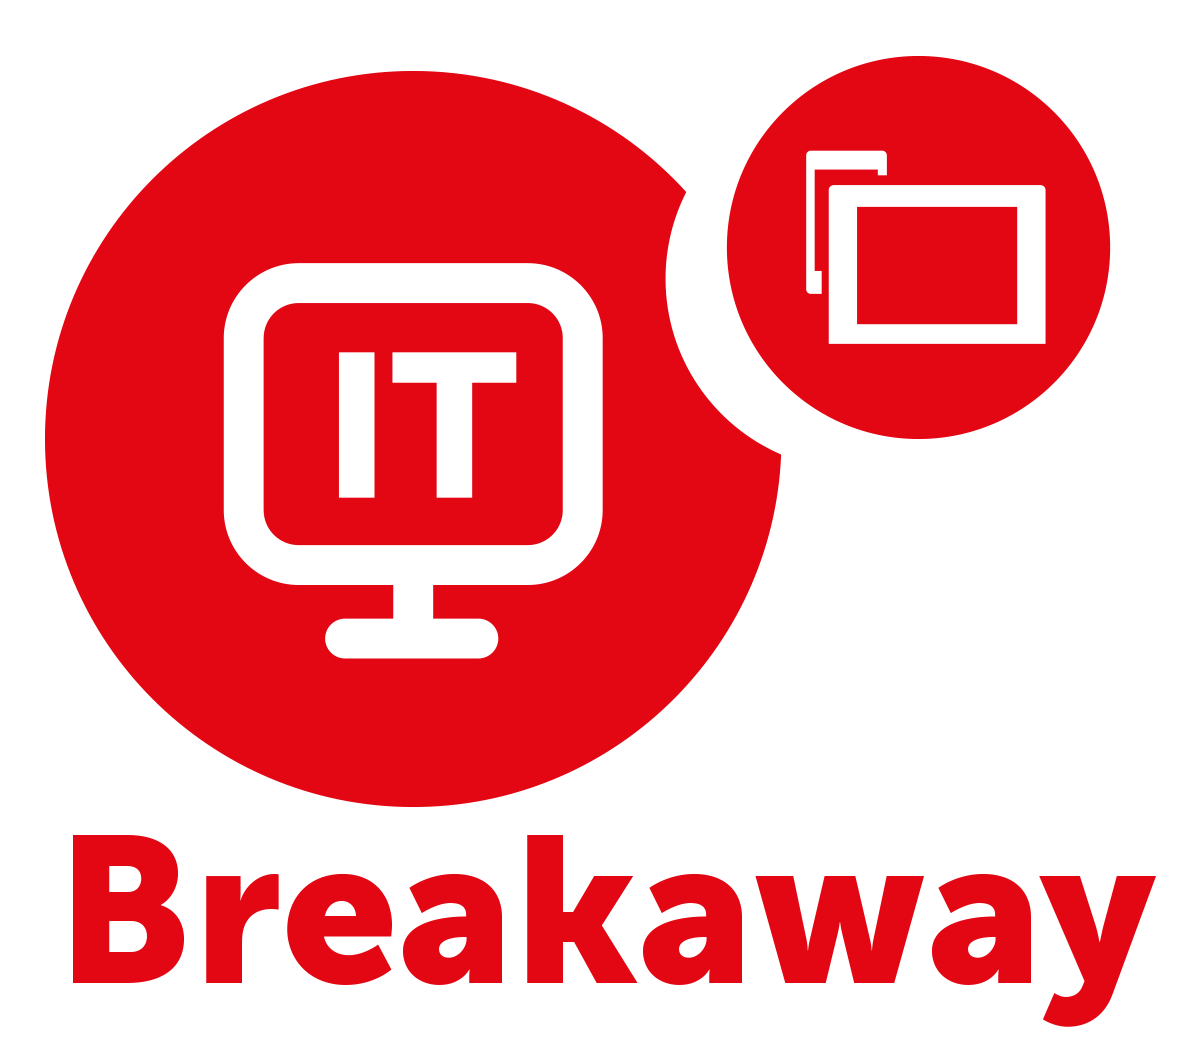 Breakaway logo final - red